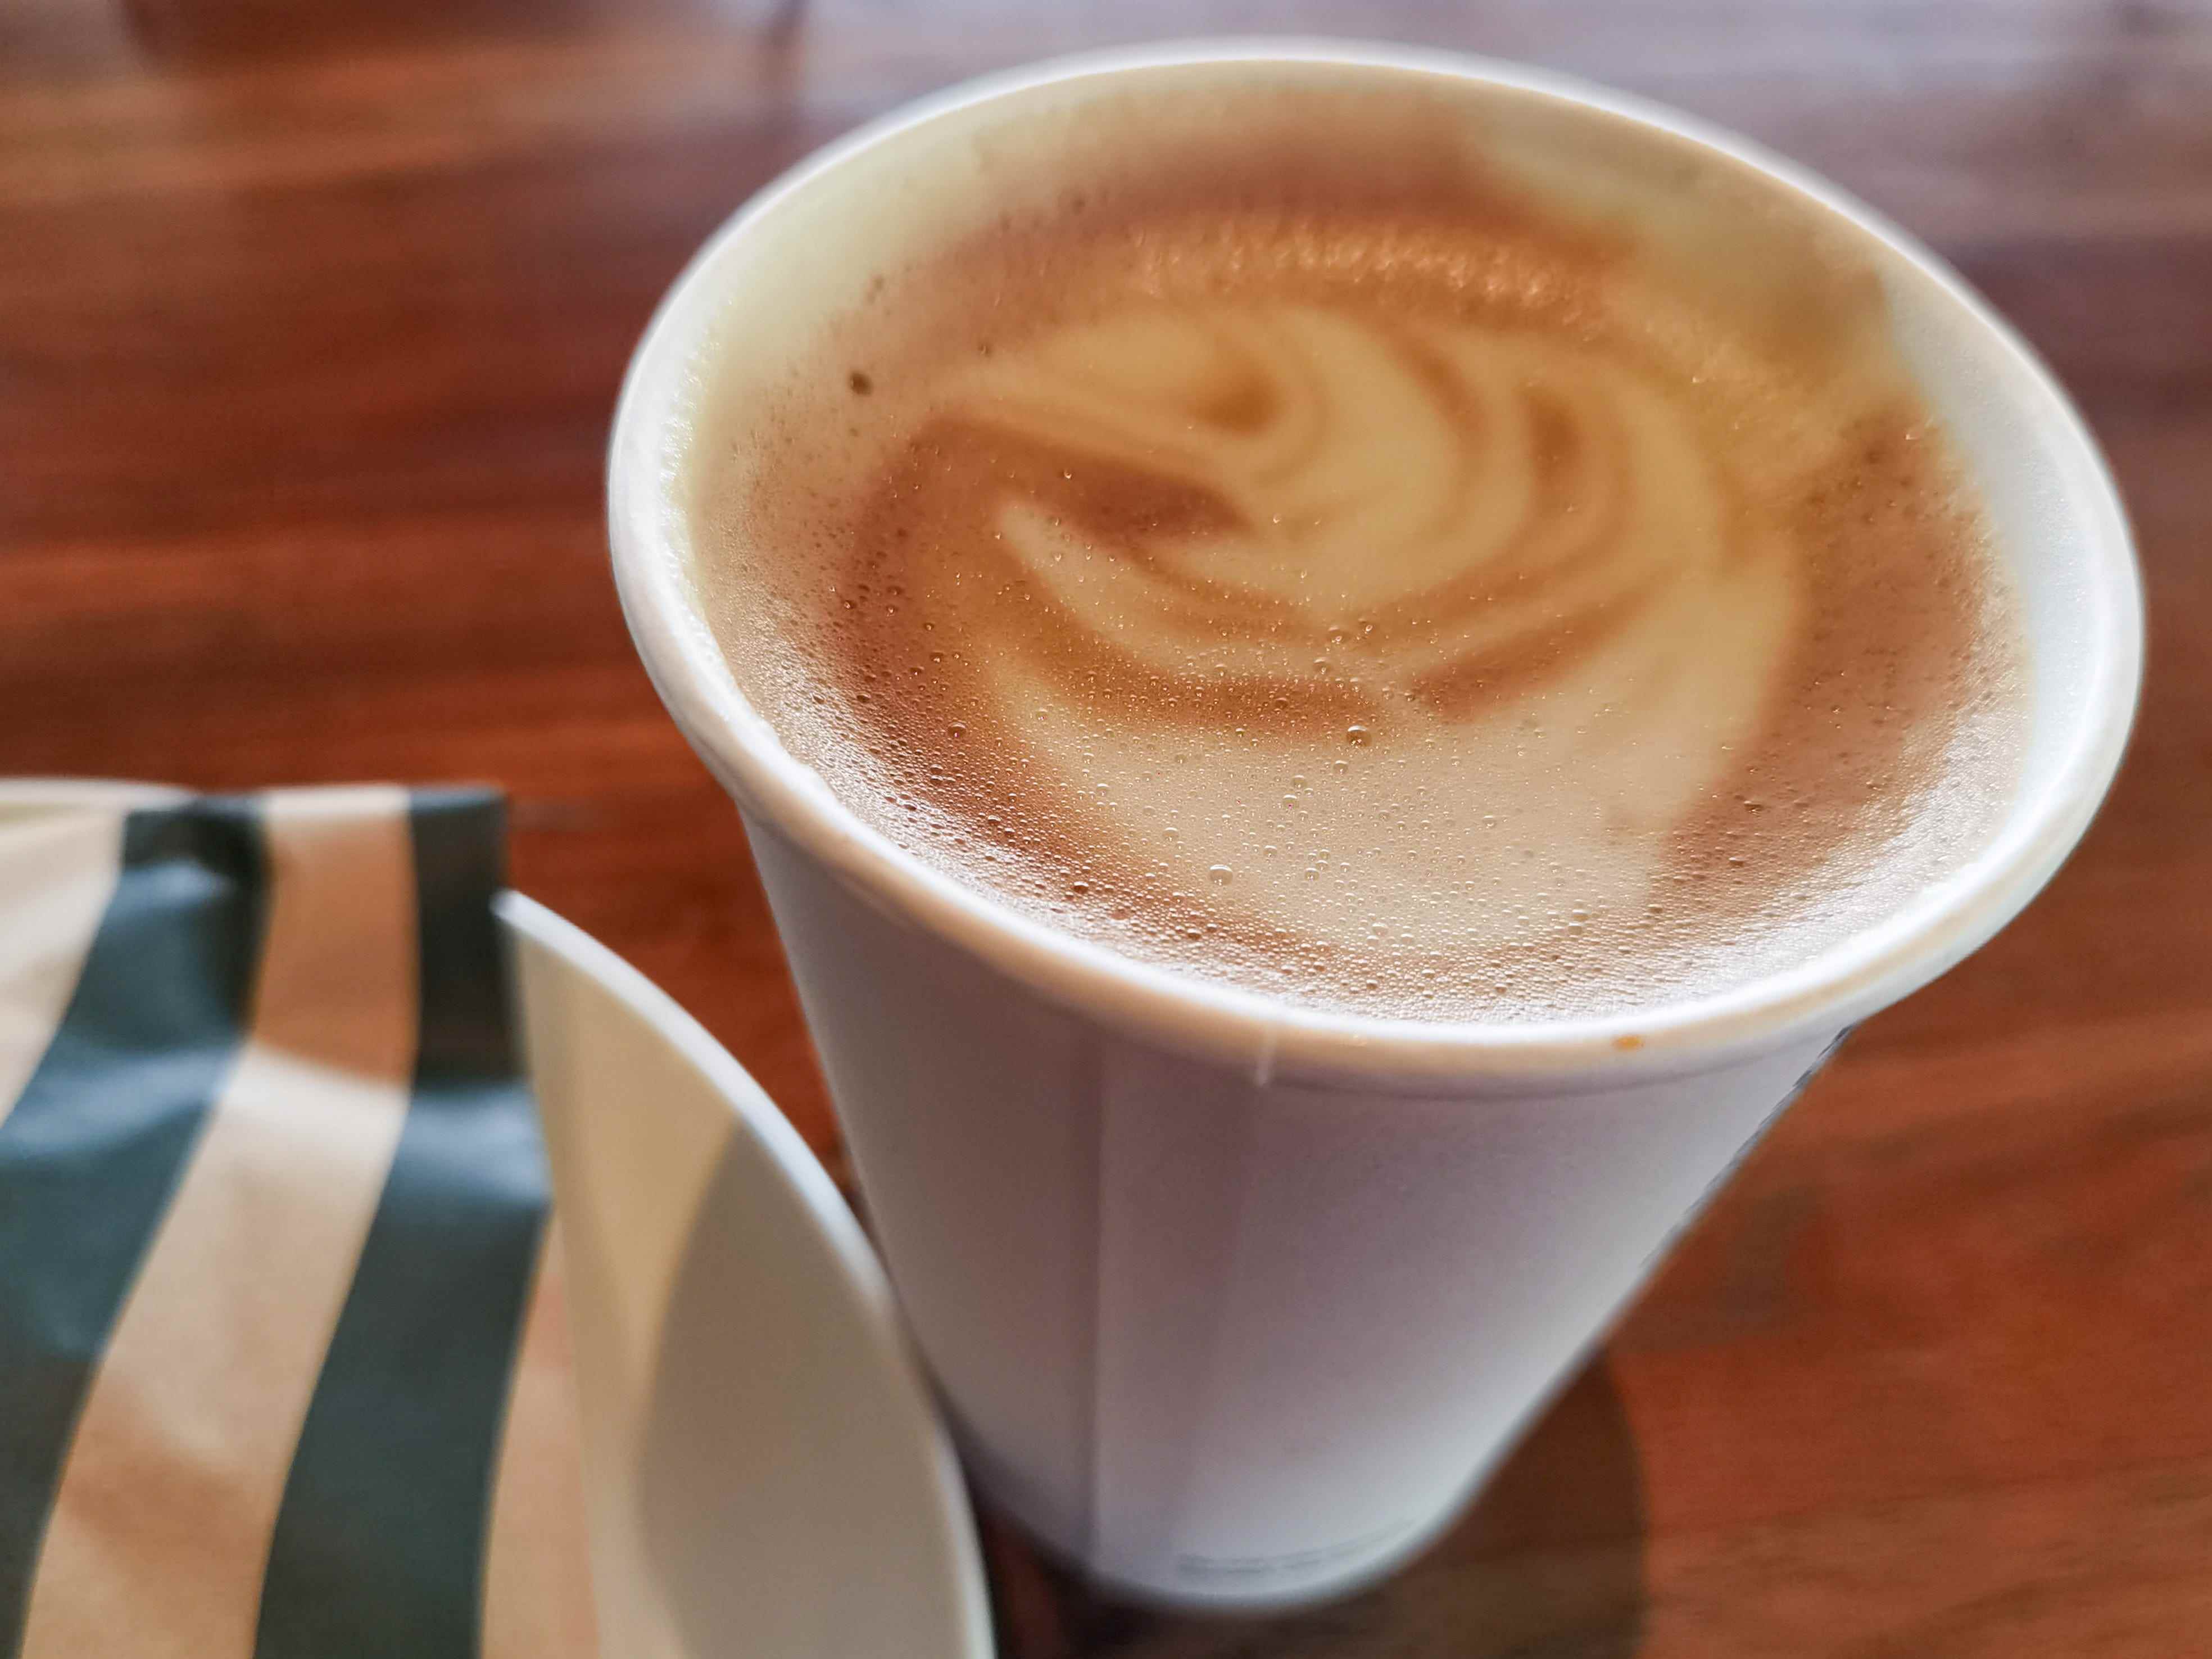 Cappuccino-Getränk von Starbucks mit Schaumkunst auf Zeit neben einem Spritzbeutel von Starbucks